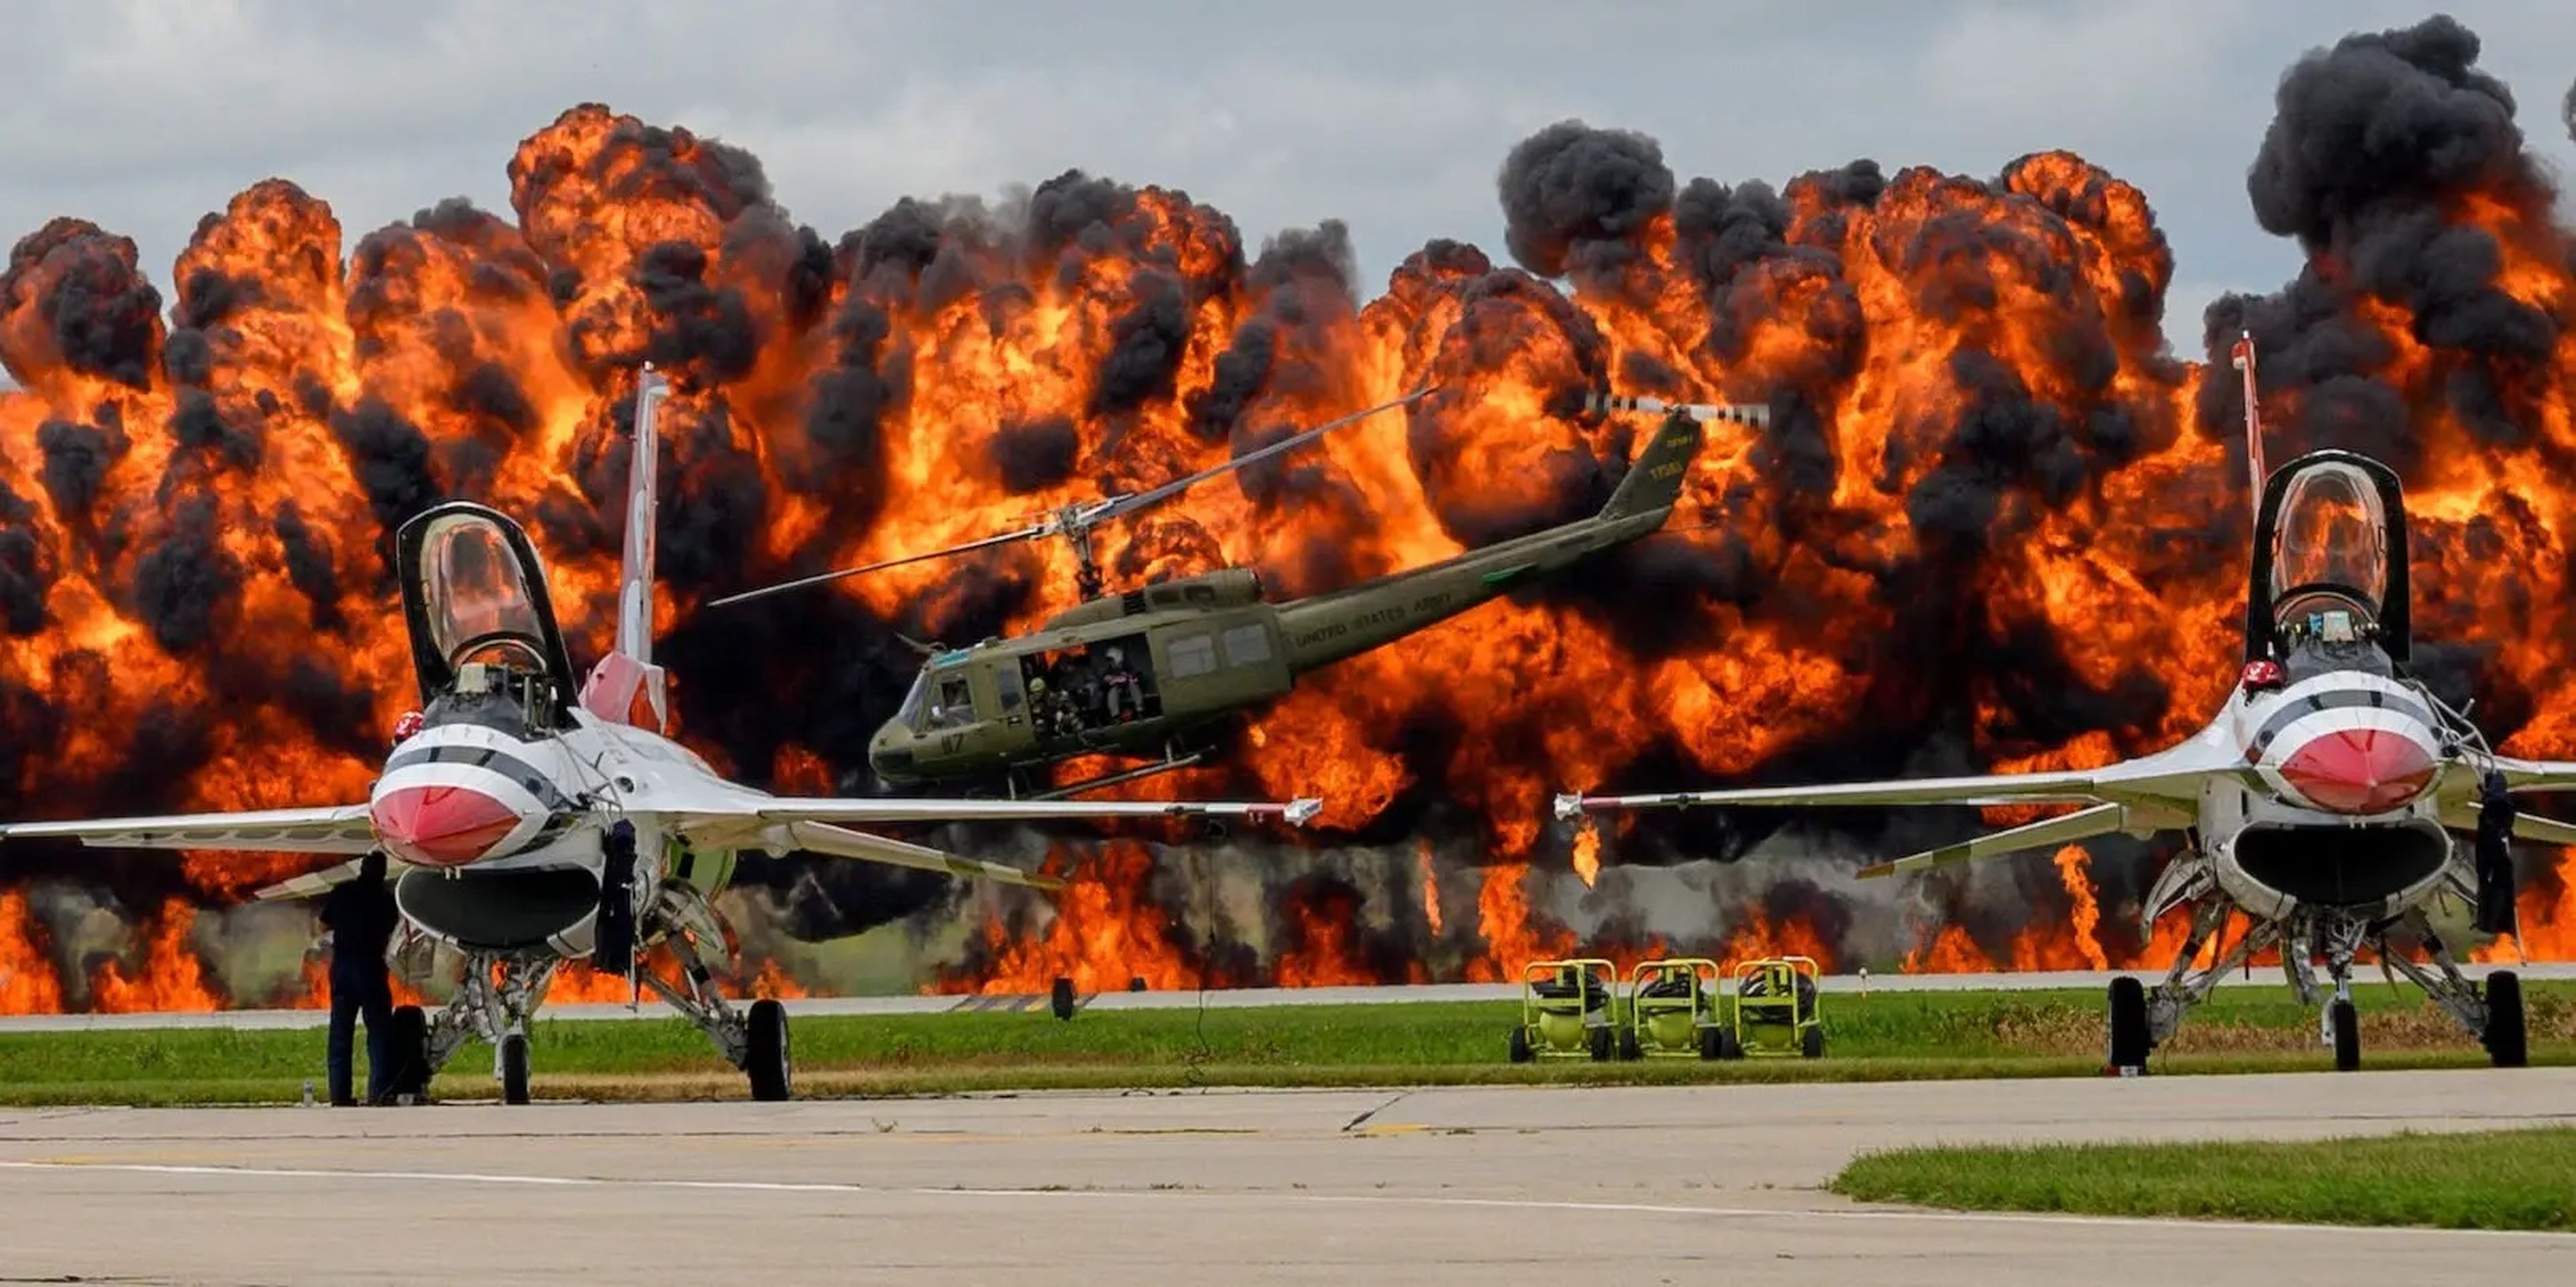 Thunderbirds de las Fuerzas Aéreas de EEUU en la pista durante una recreación de la Guerra de Vietnam en el Sioux Falls Airshow de Dakota del Sur.